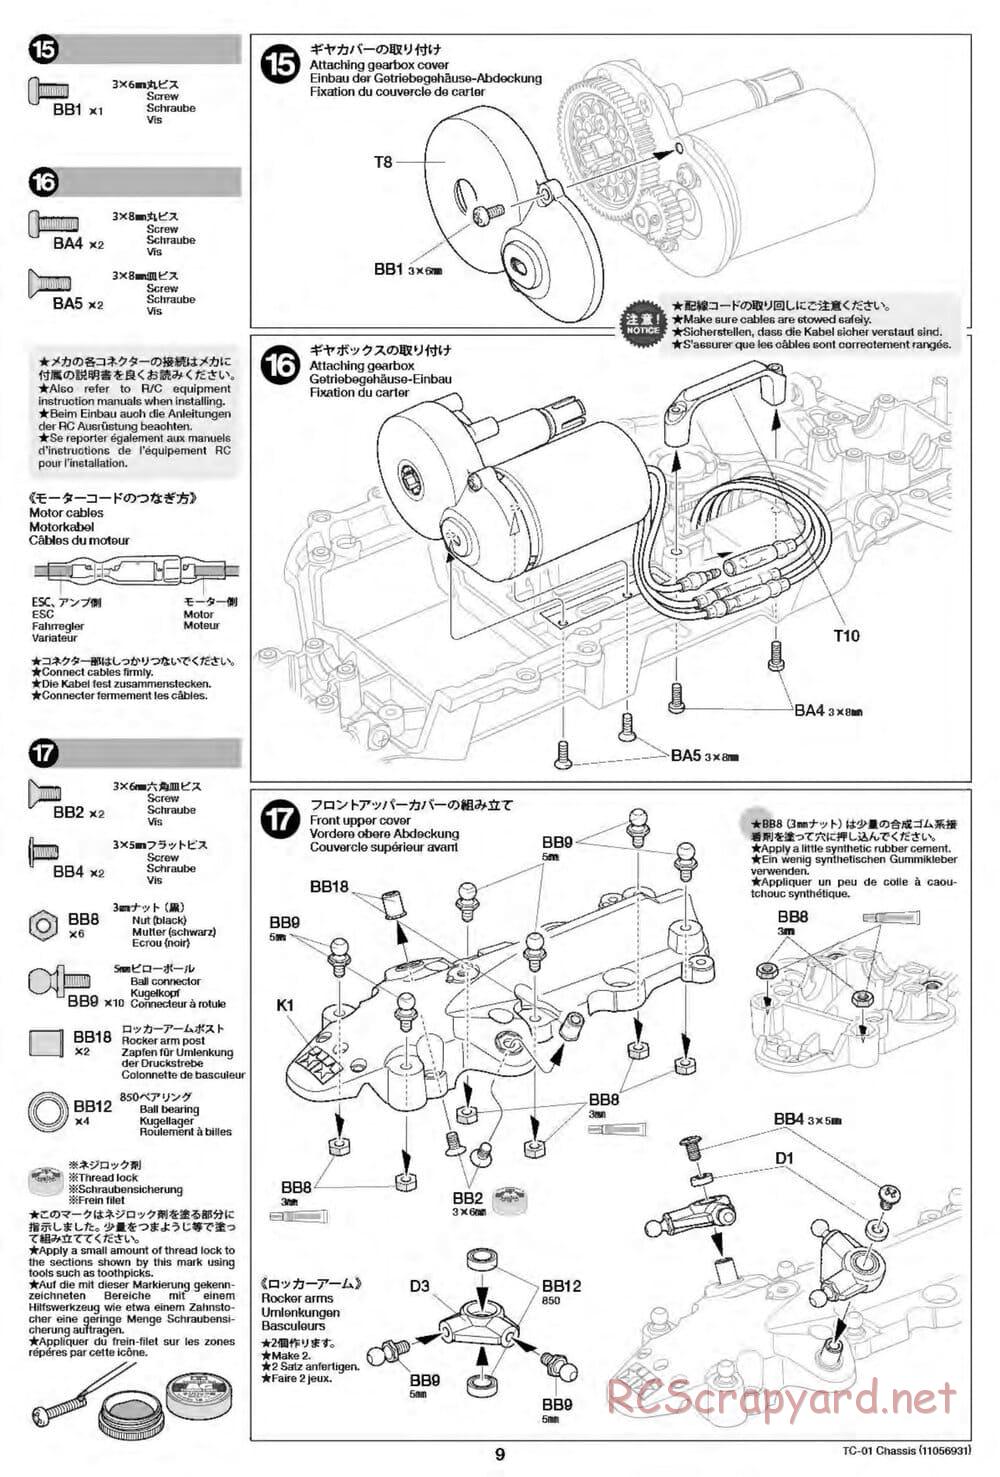 Tamiya - TC-01 Chassis - Manual - Page 9